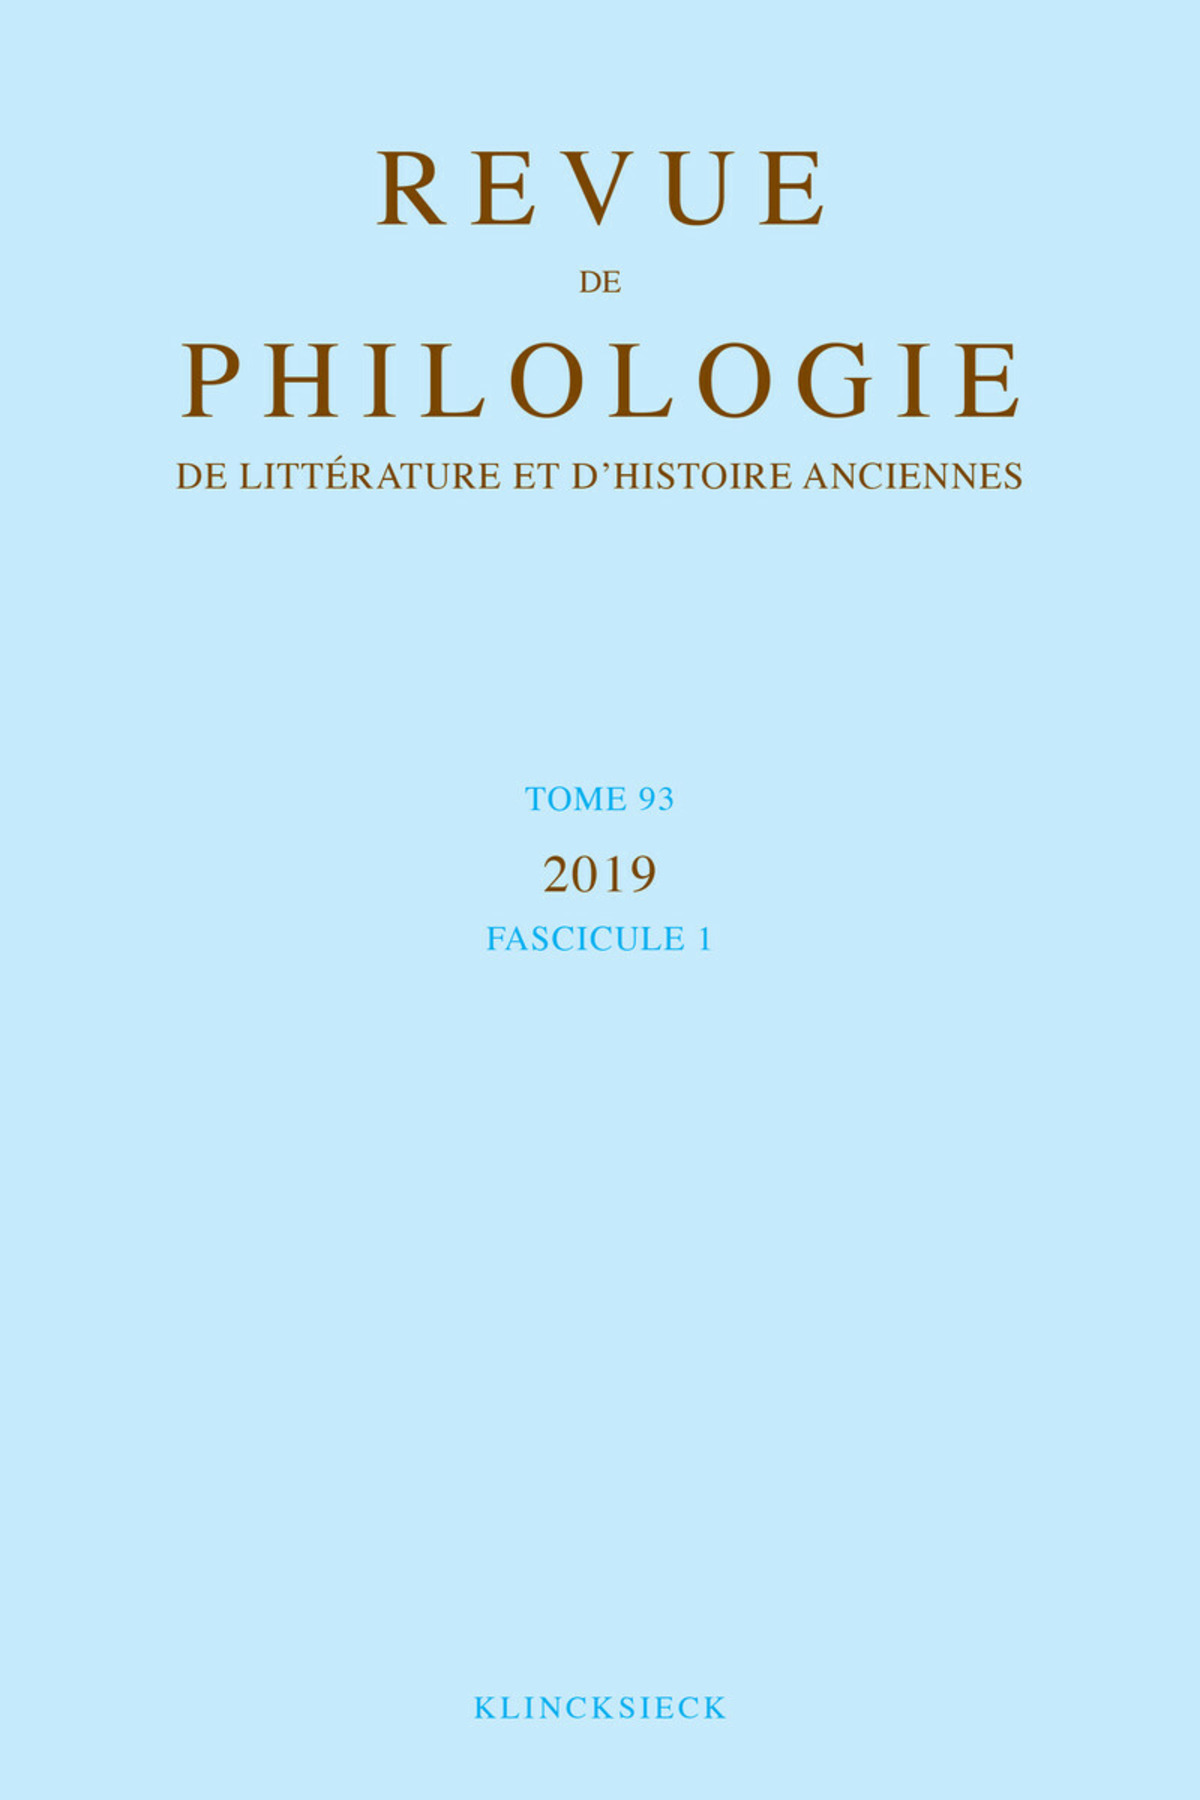 Revue de philologie, de littérature et d'histoire anciennes volume 93-1